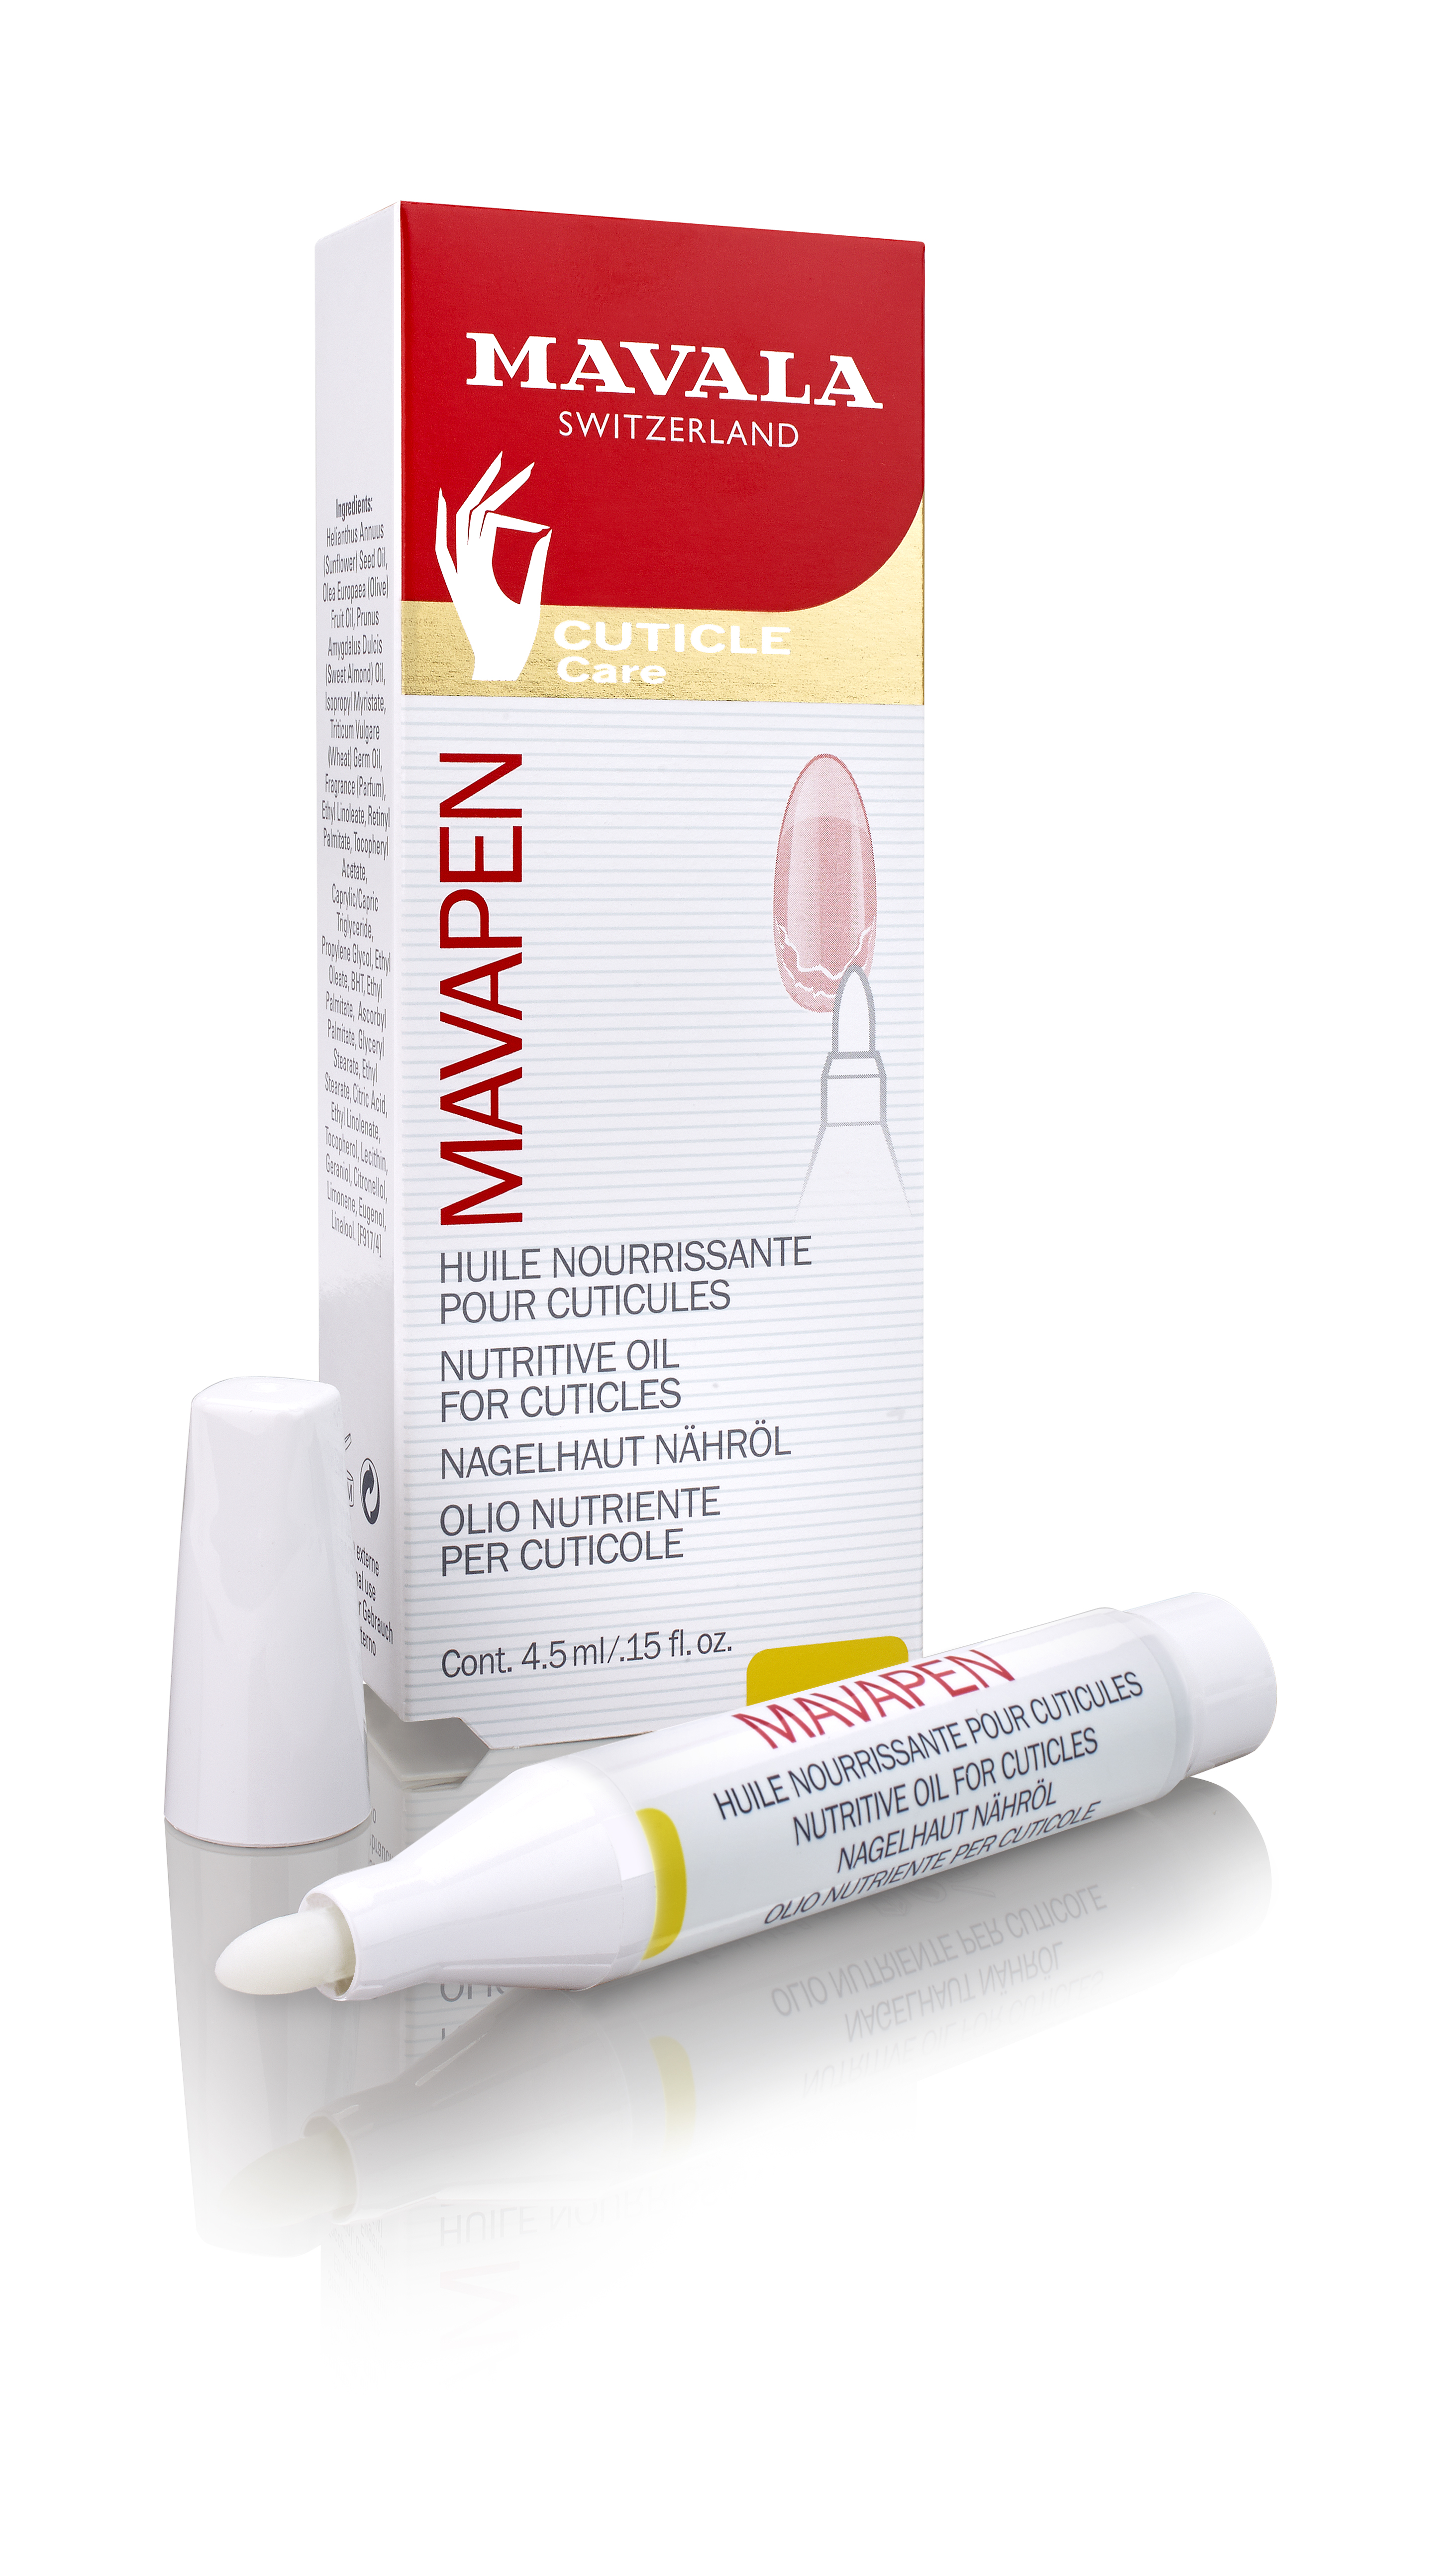 MAVAPEN - Nagelhaut-Nährölstift -  Nährendes Öl für die Nagelhaut  -  Vegan